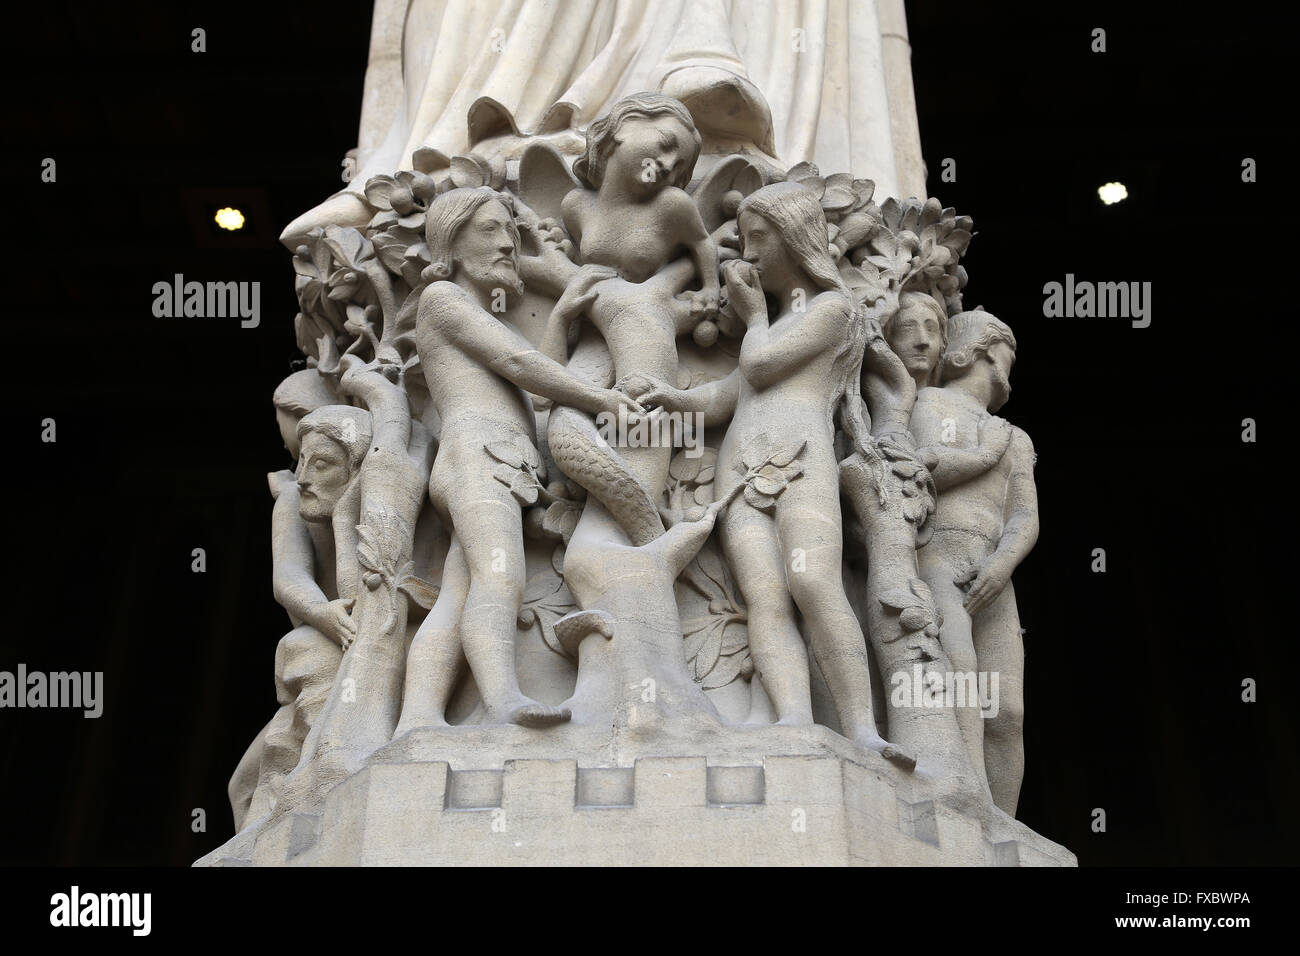 Adam Eva und die Schlange. Notre-Dame. Paris, Frankreich. Westfassade.  Statuen von Viollet-Duc, 19. Jh. wieder aufgebaut Stockfotografie - Alamy